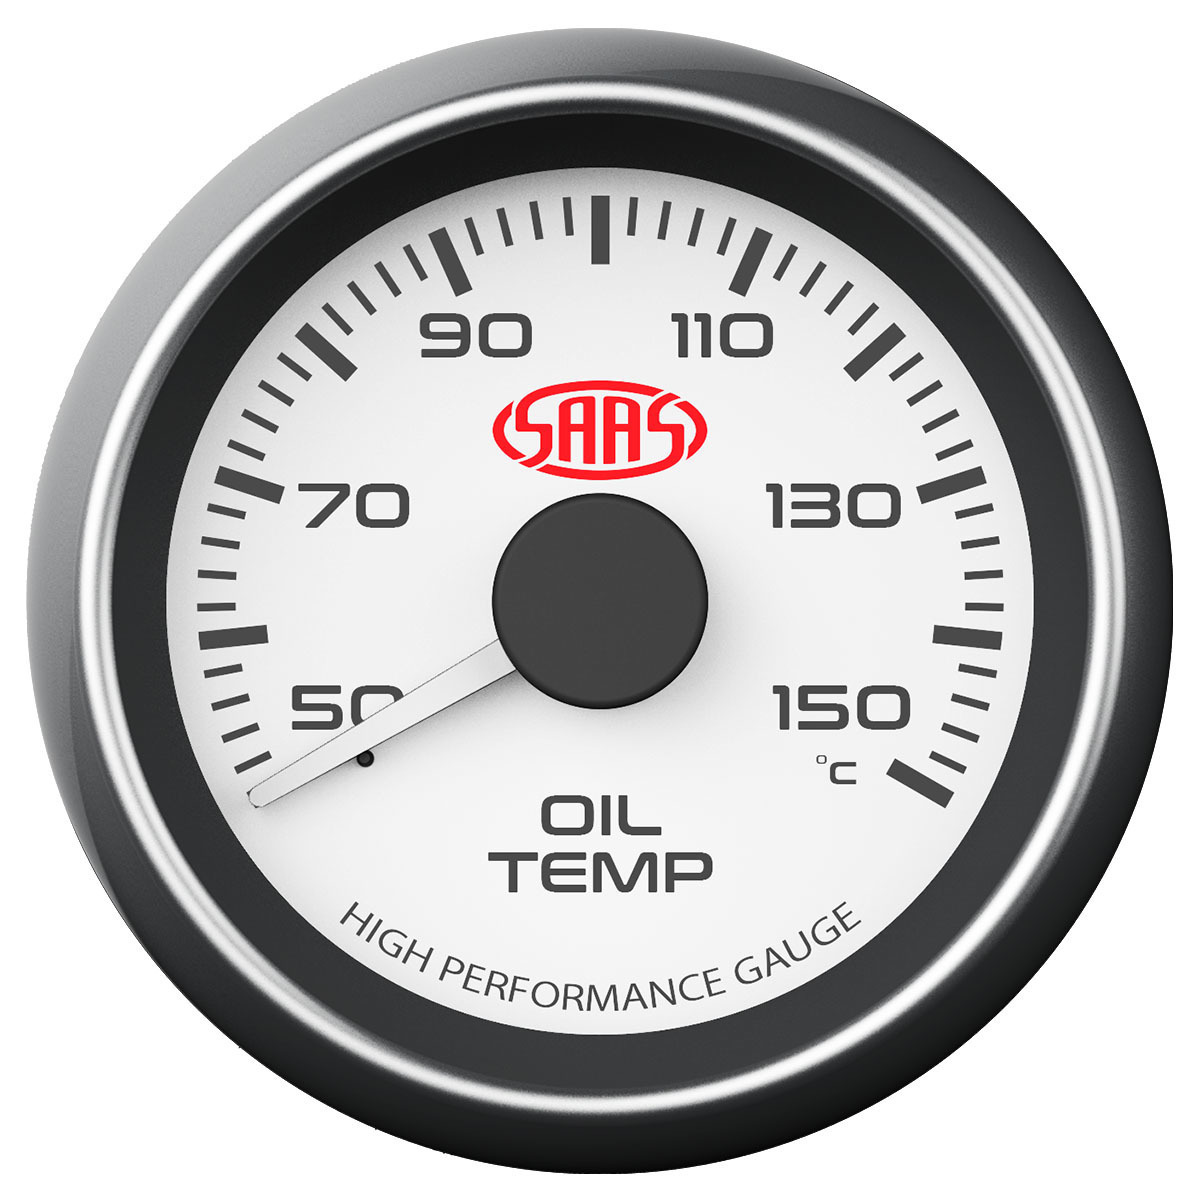 Oil temp gauge on pillar